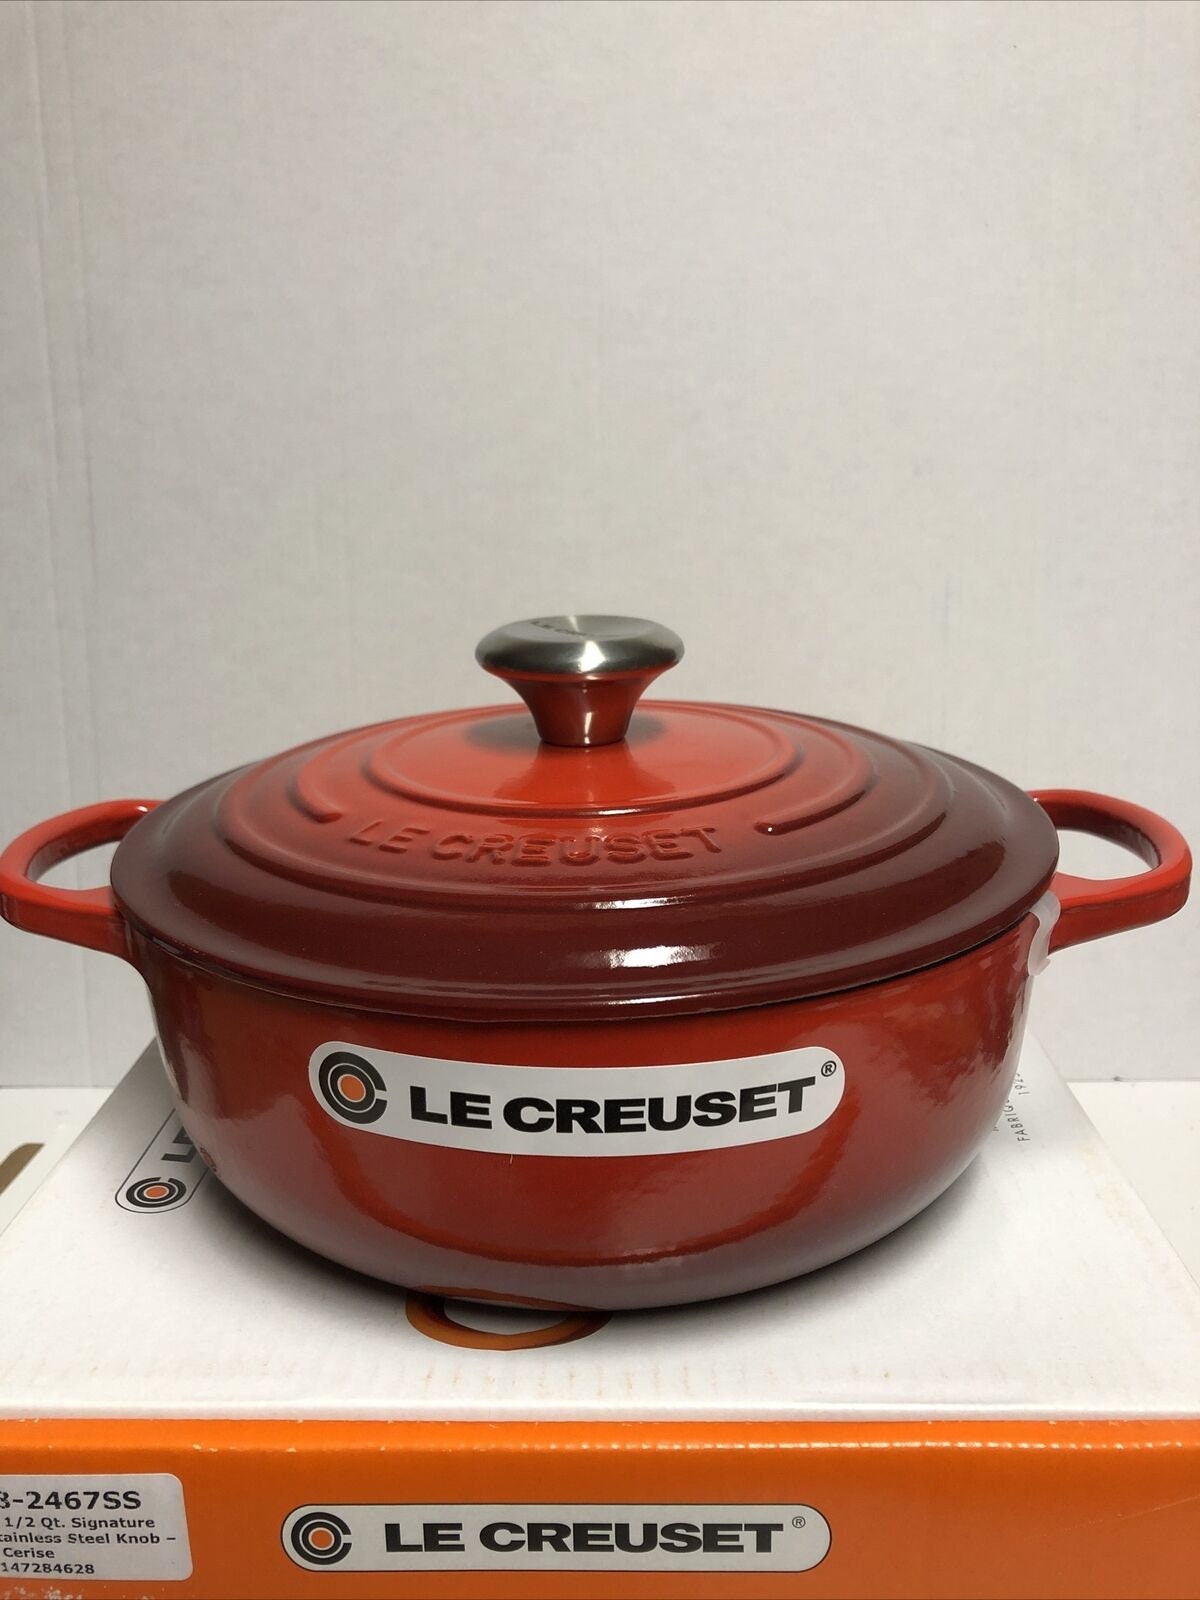 Le Creuset Enameled Cast Iron Signature 5 1/2 Quart Round Dutch Oven in  Cerise